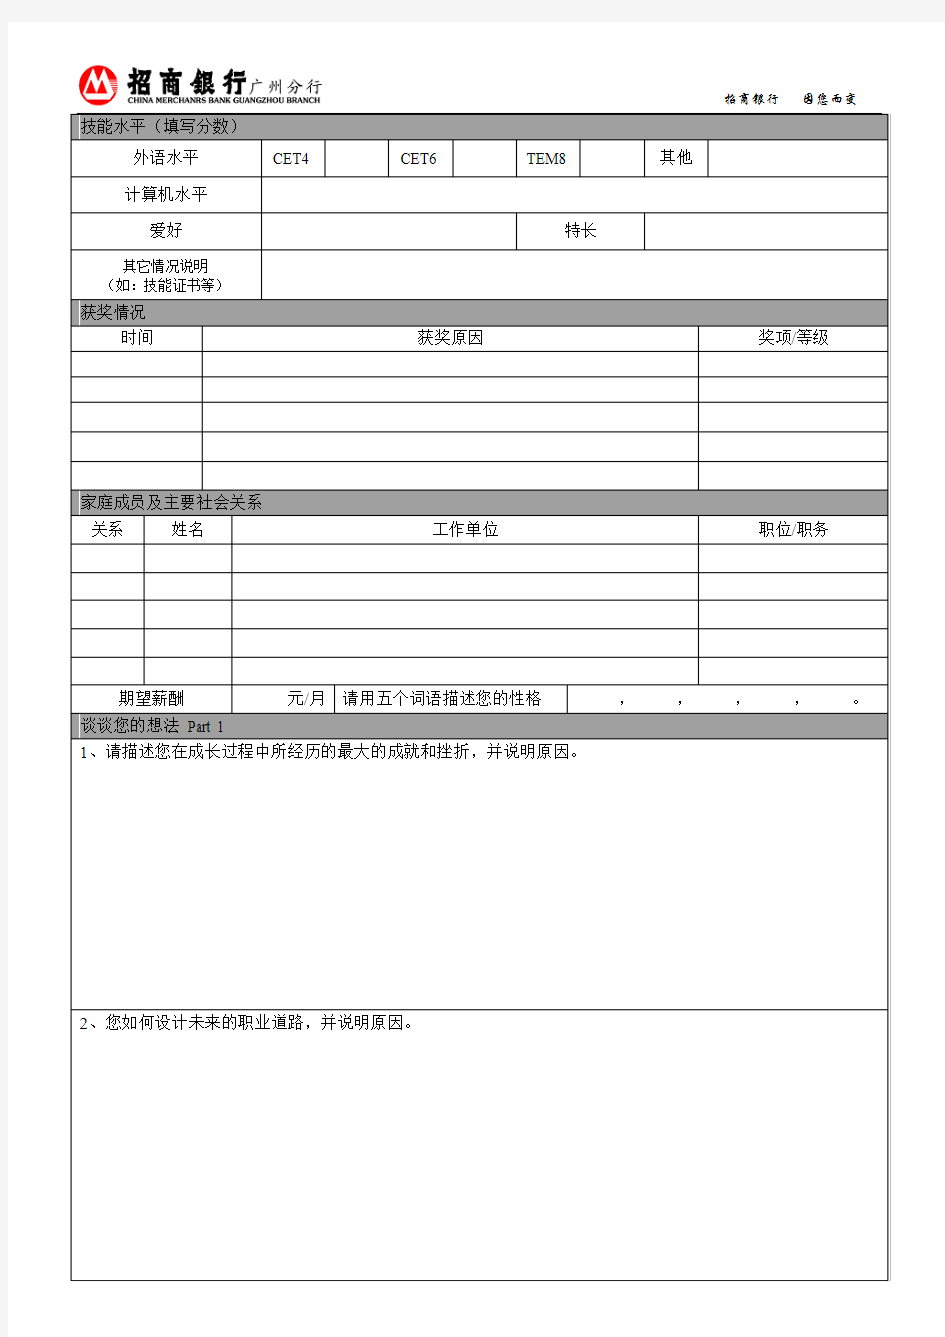 招商银行广州分行2014年应届毕业生应聘登记表